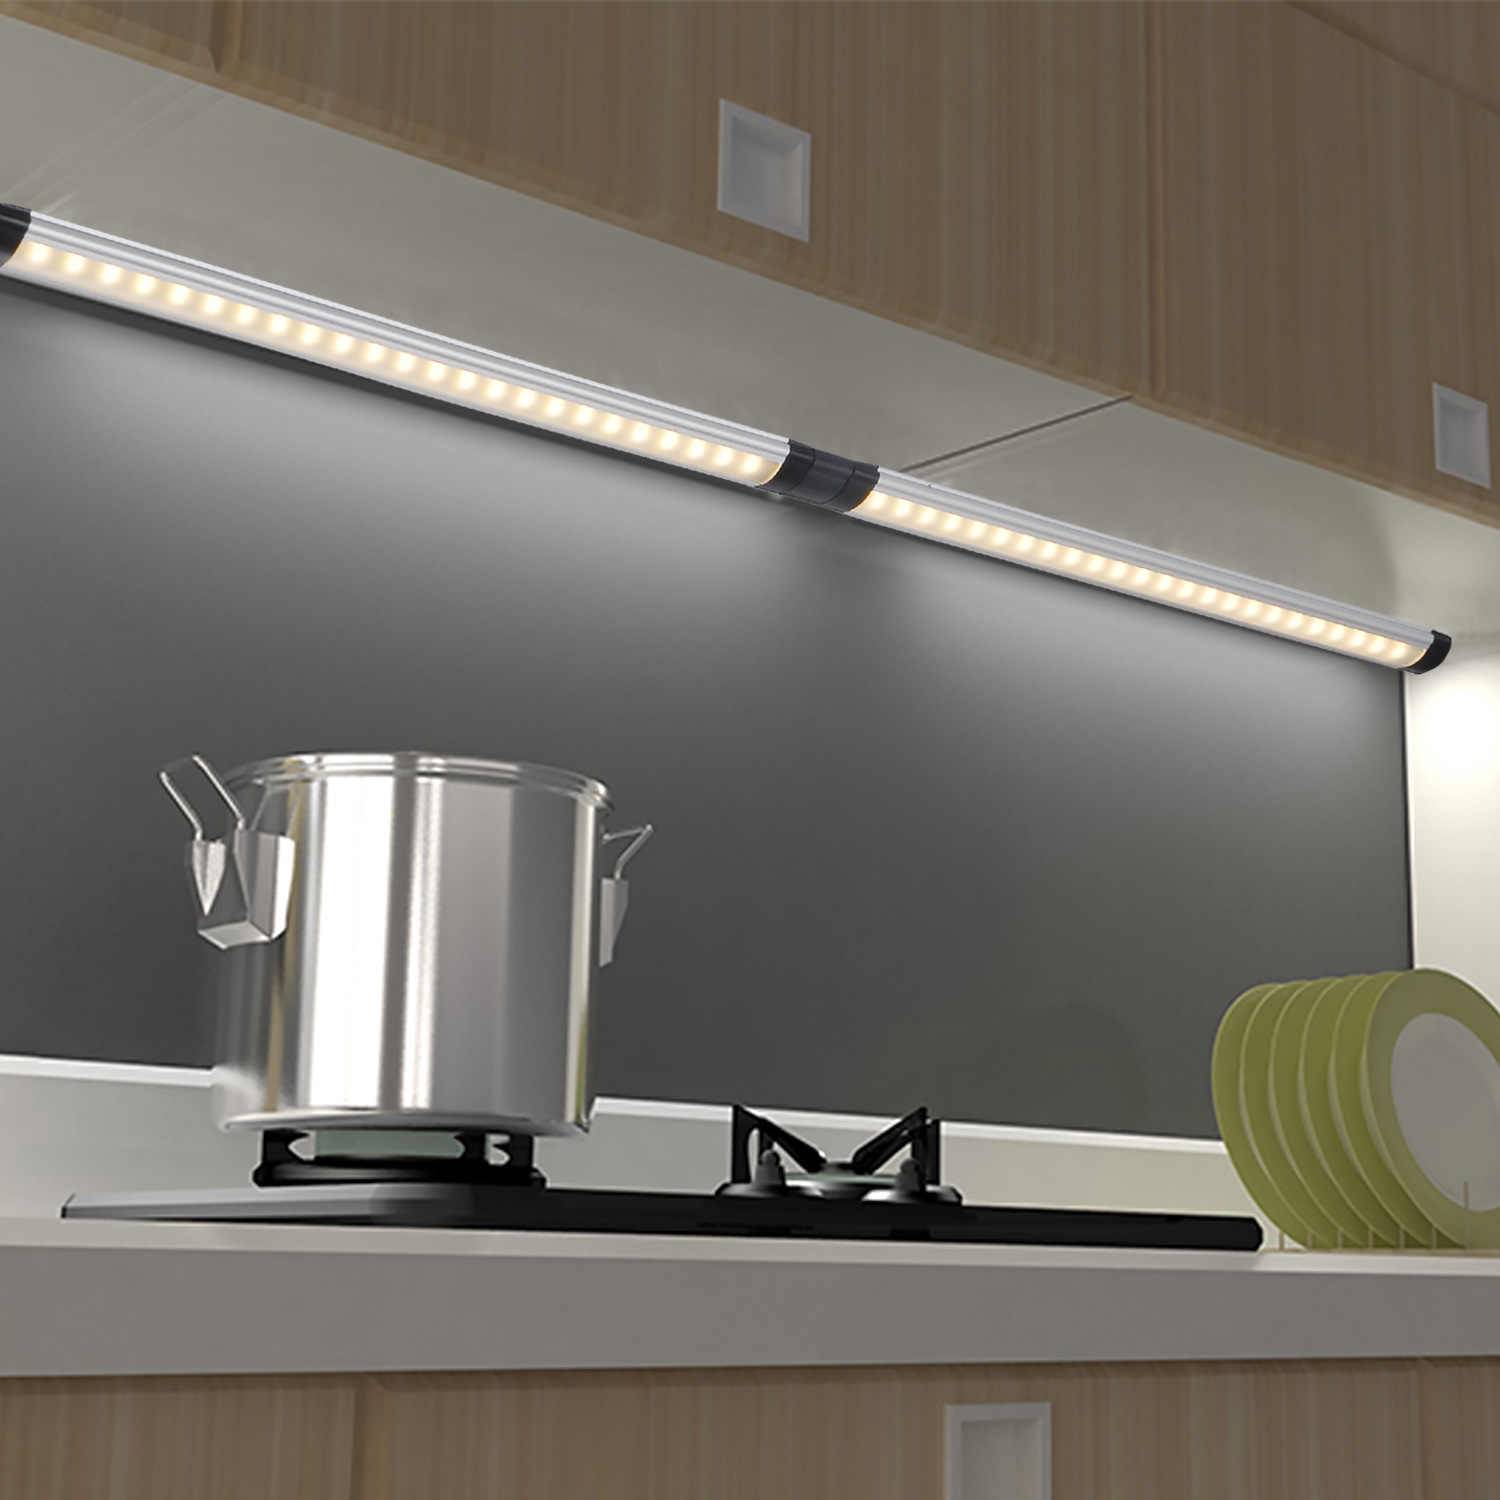 Подсветка для кухни под шкафы: светильники, софиты, диодная лента